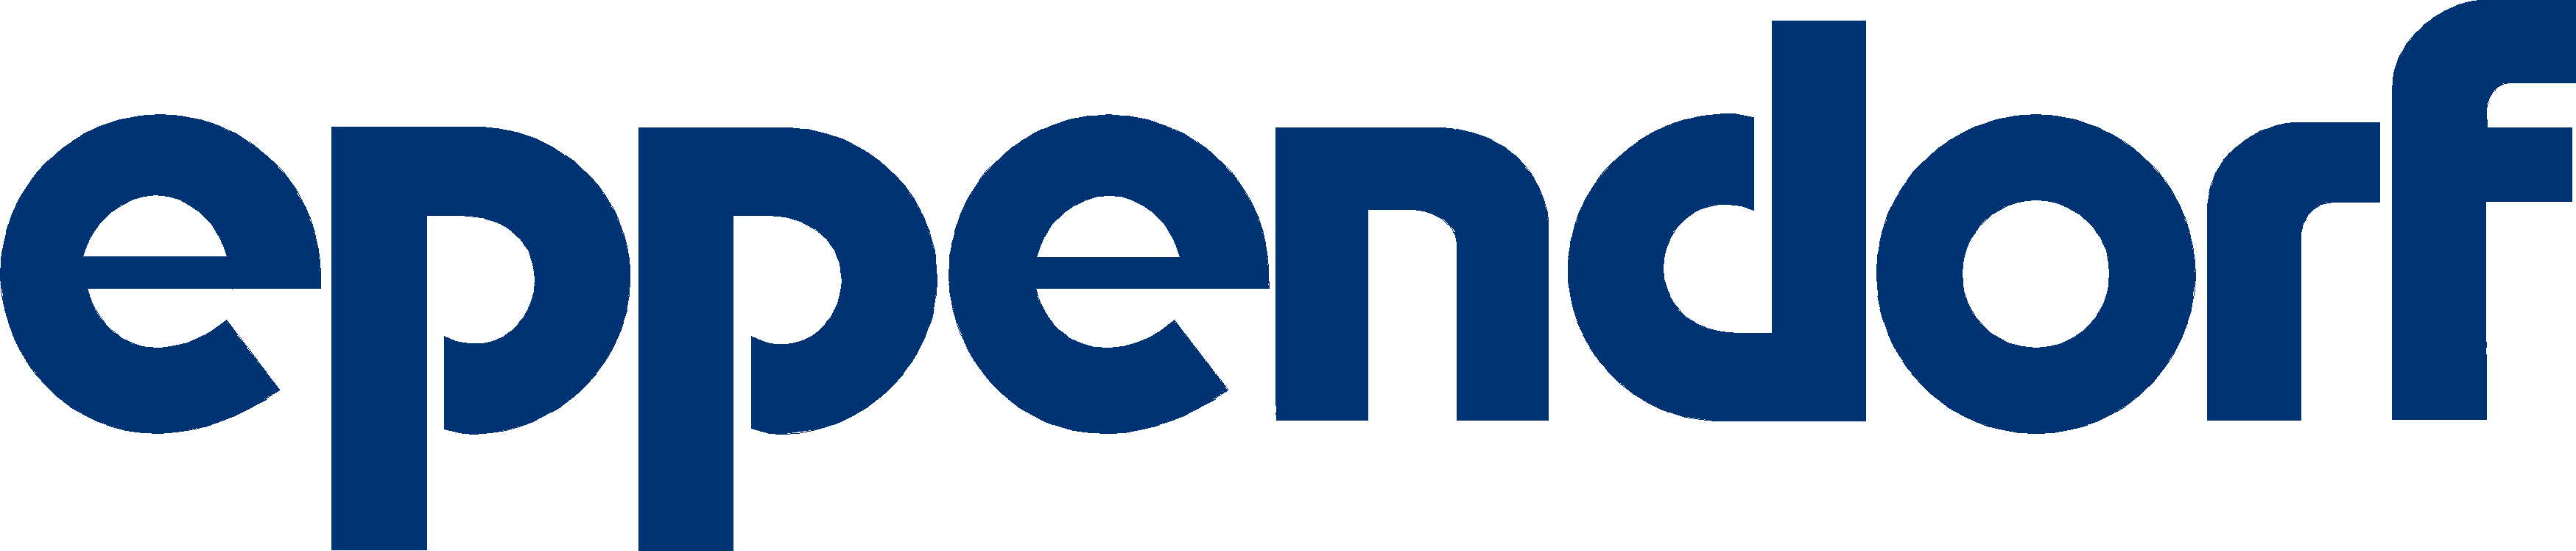 Logo-eppendorf.jpeg